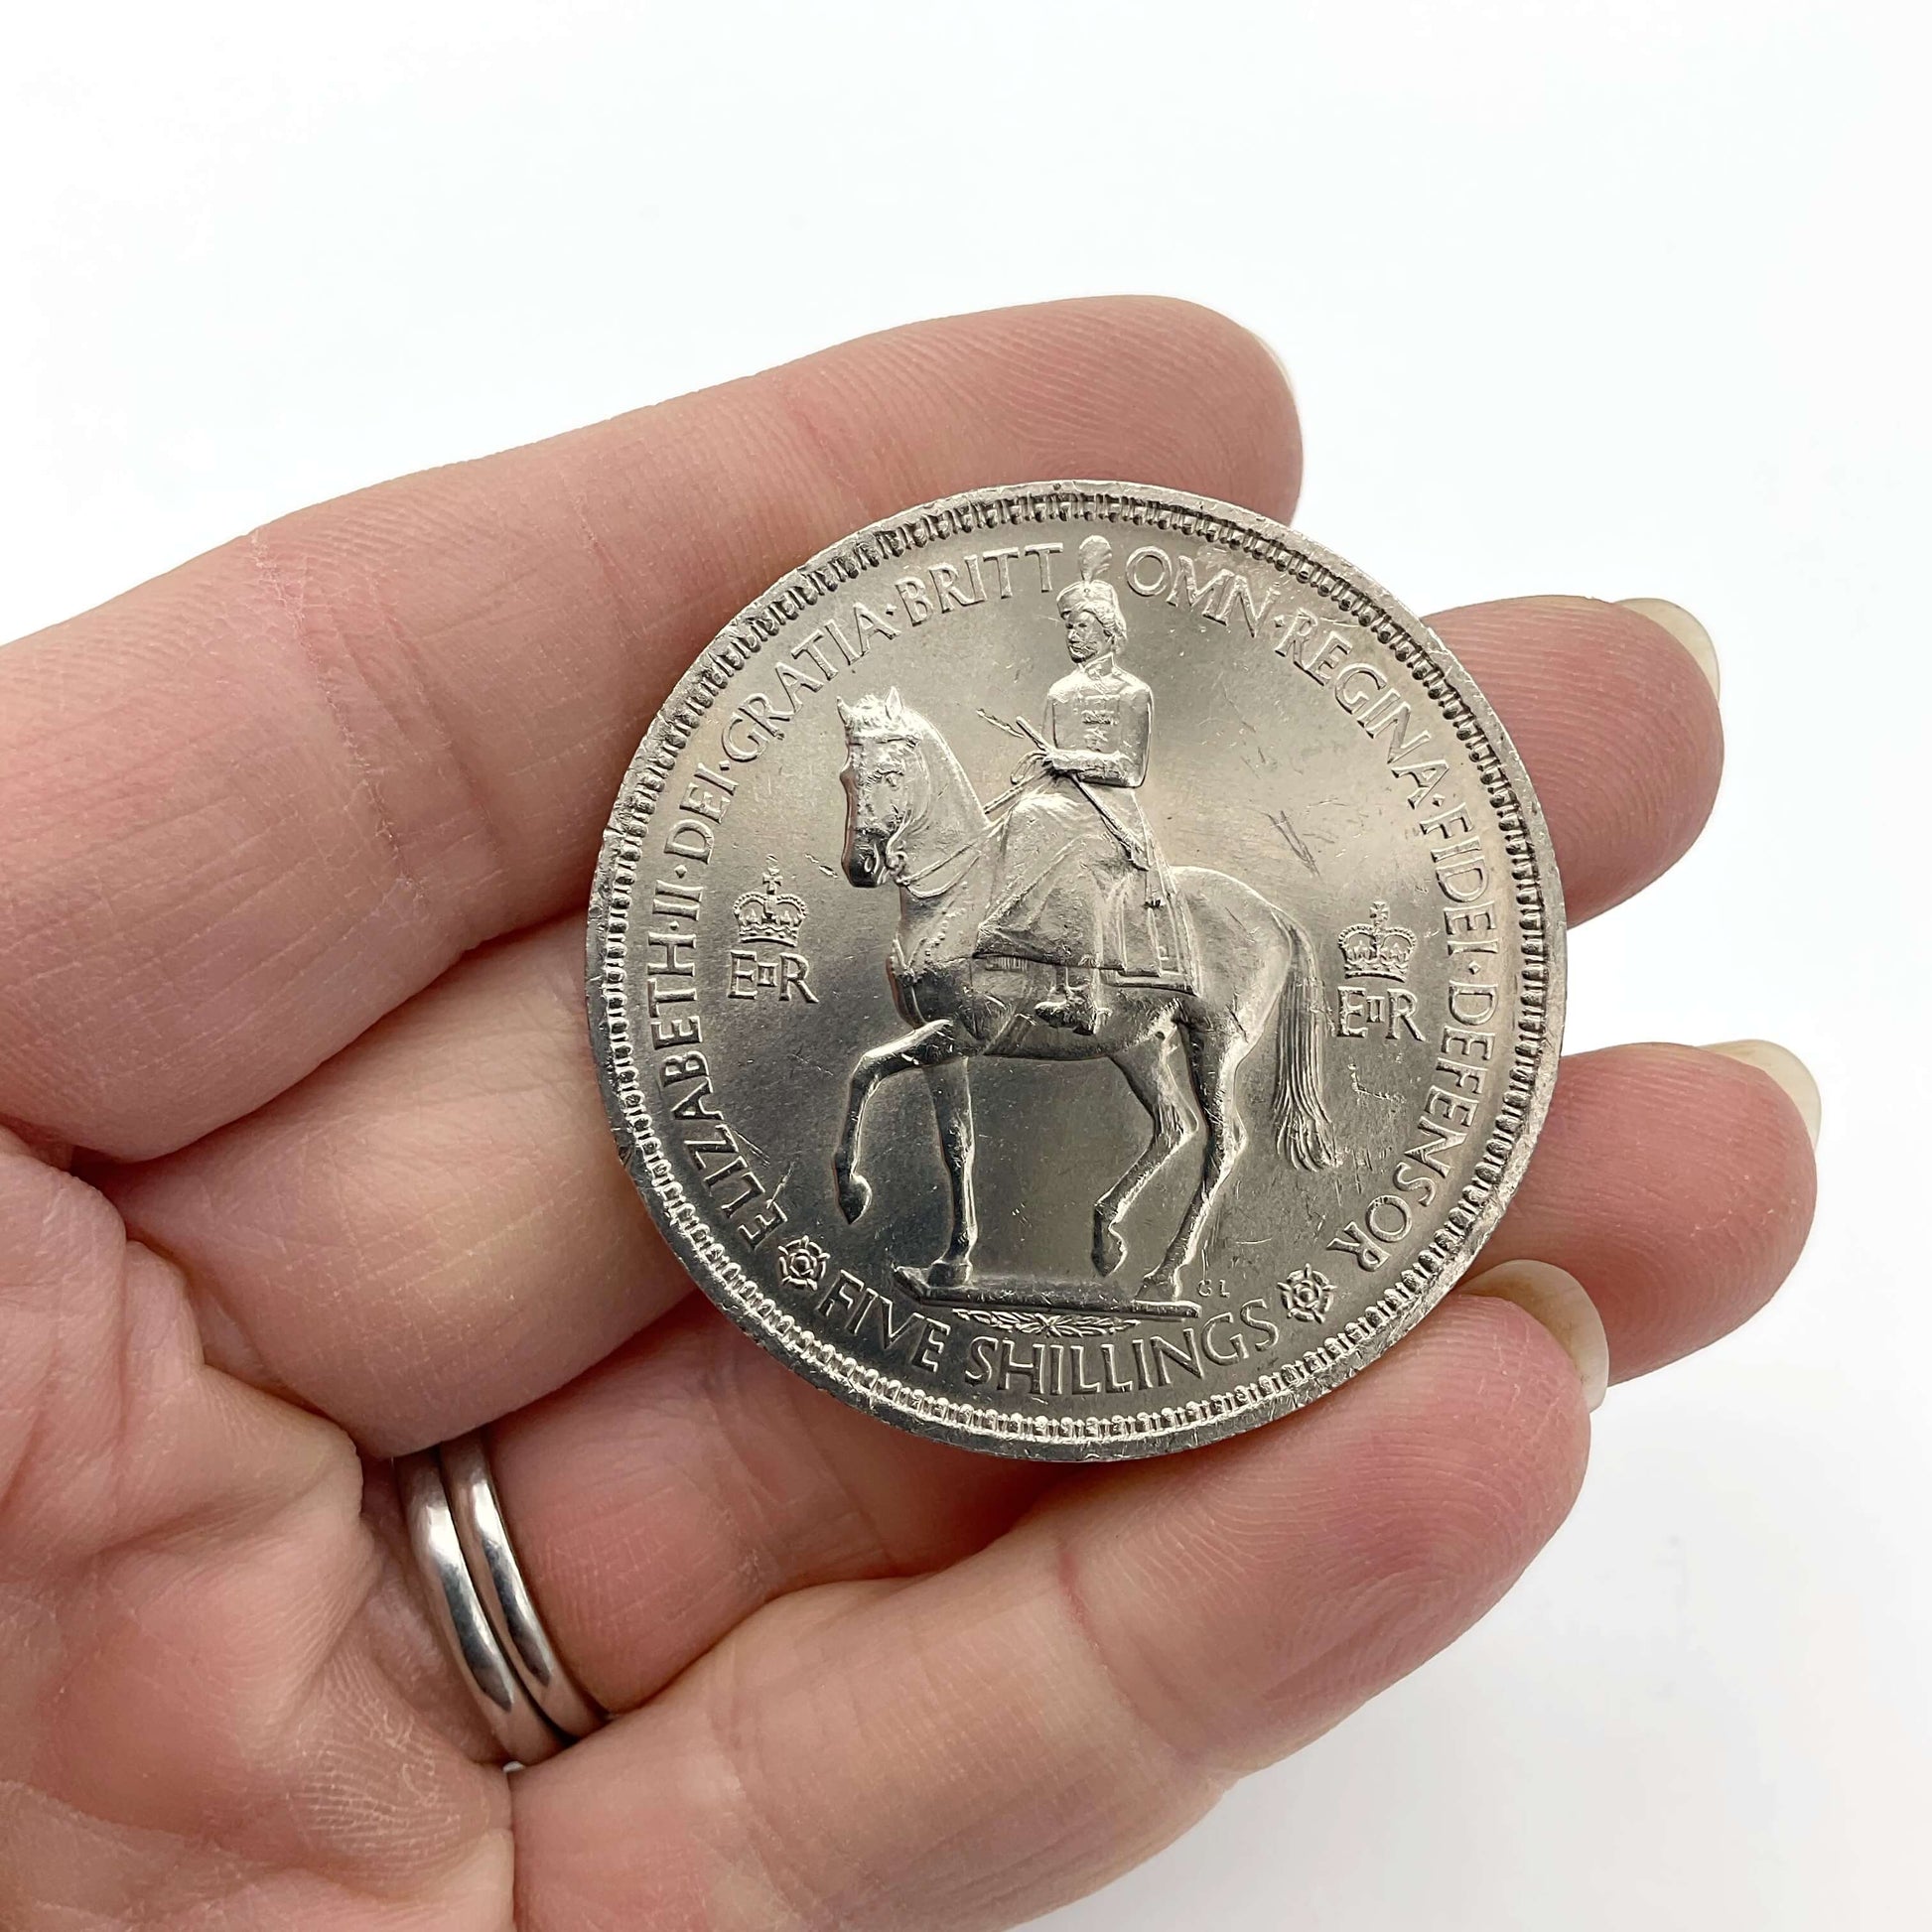 Reverse of 1953 Queen Elizabeth II Coronation Coin held in hand